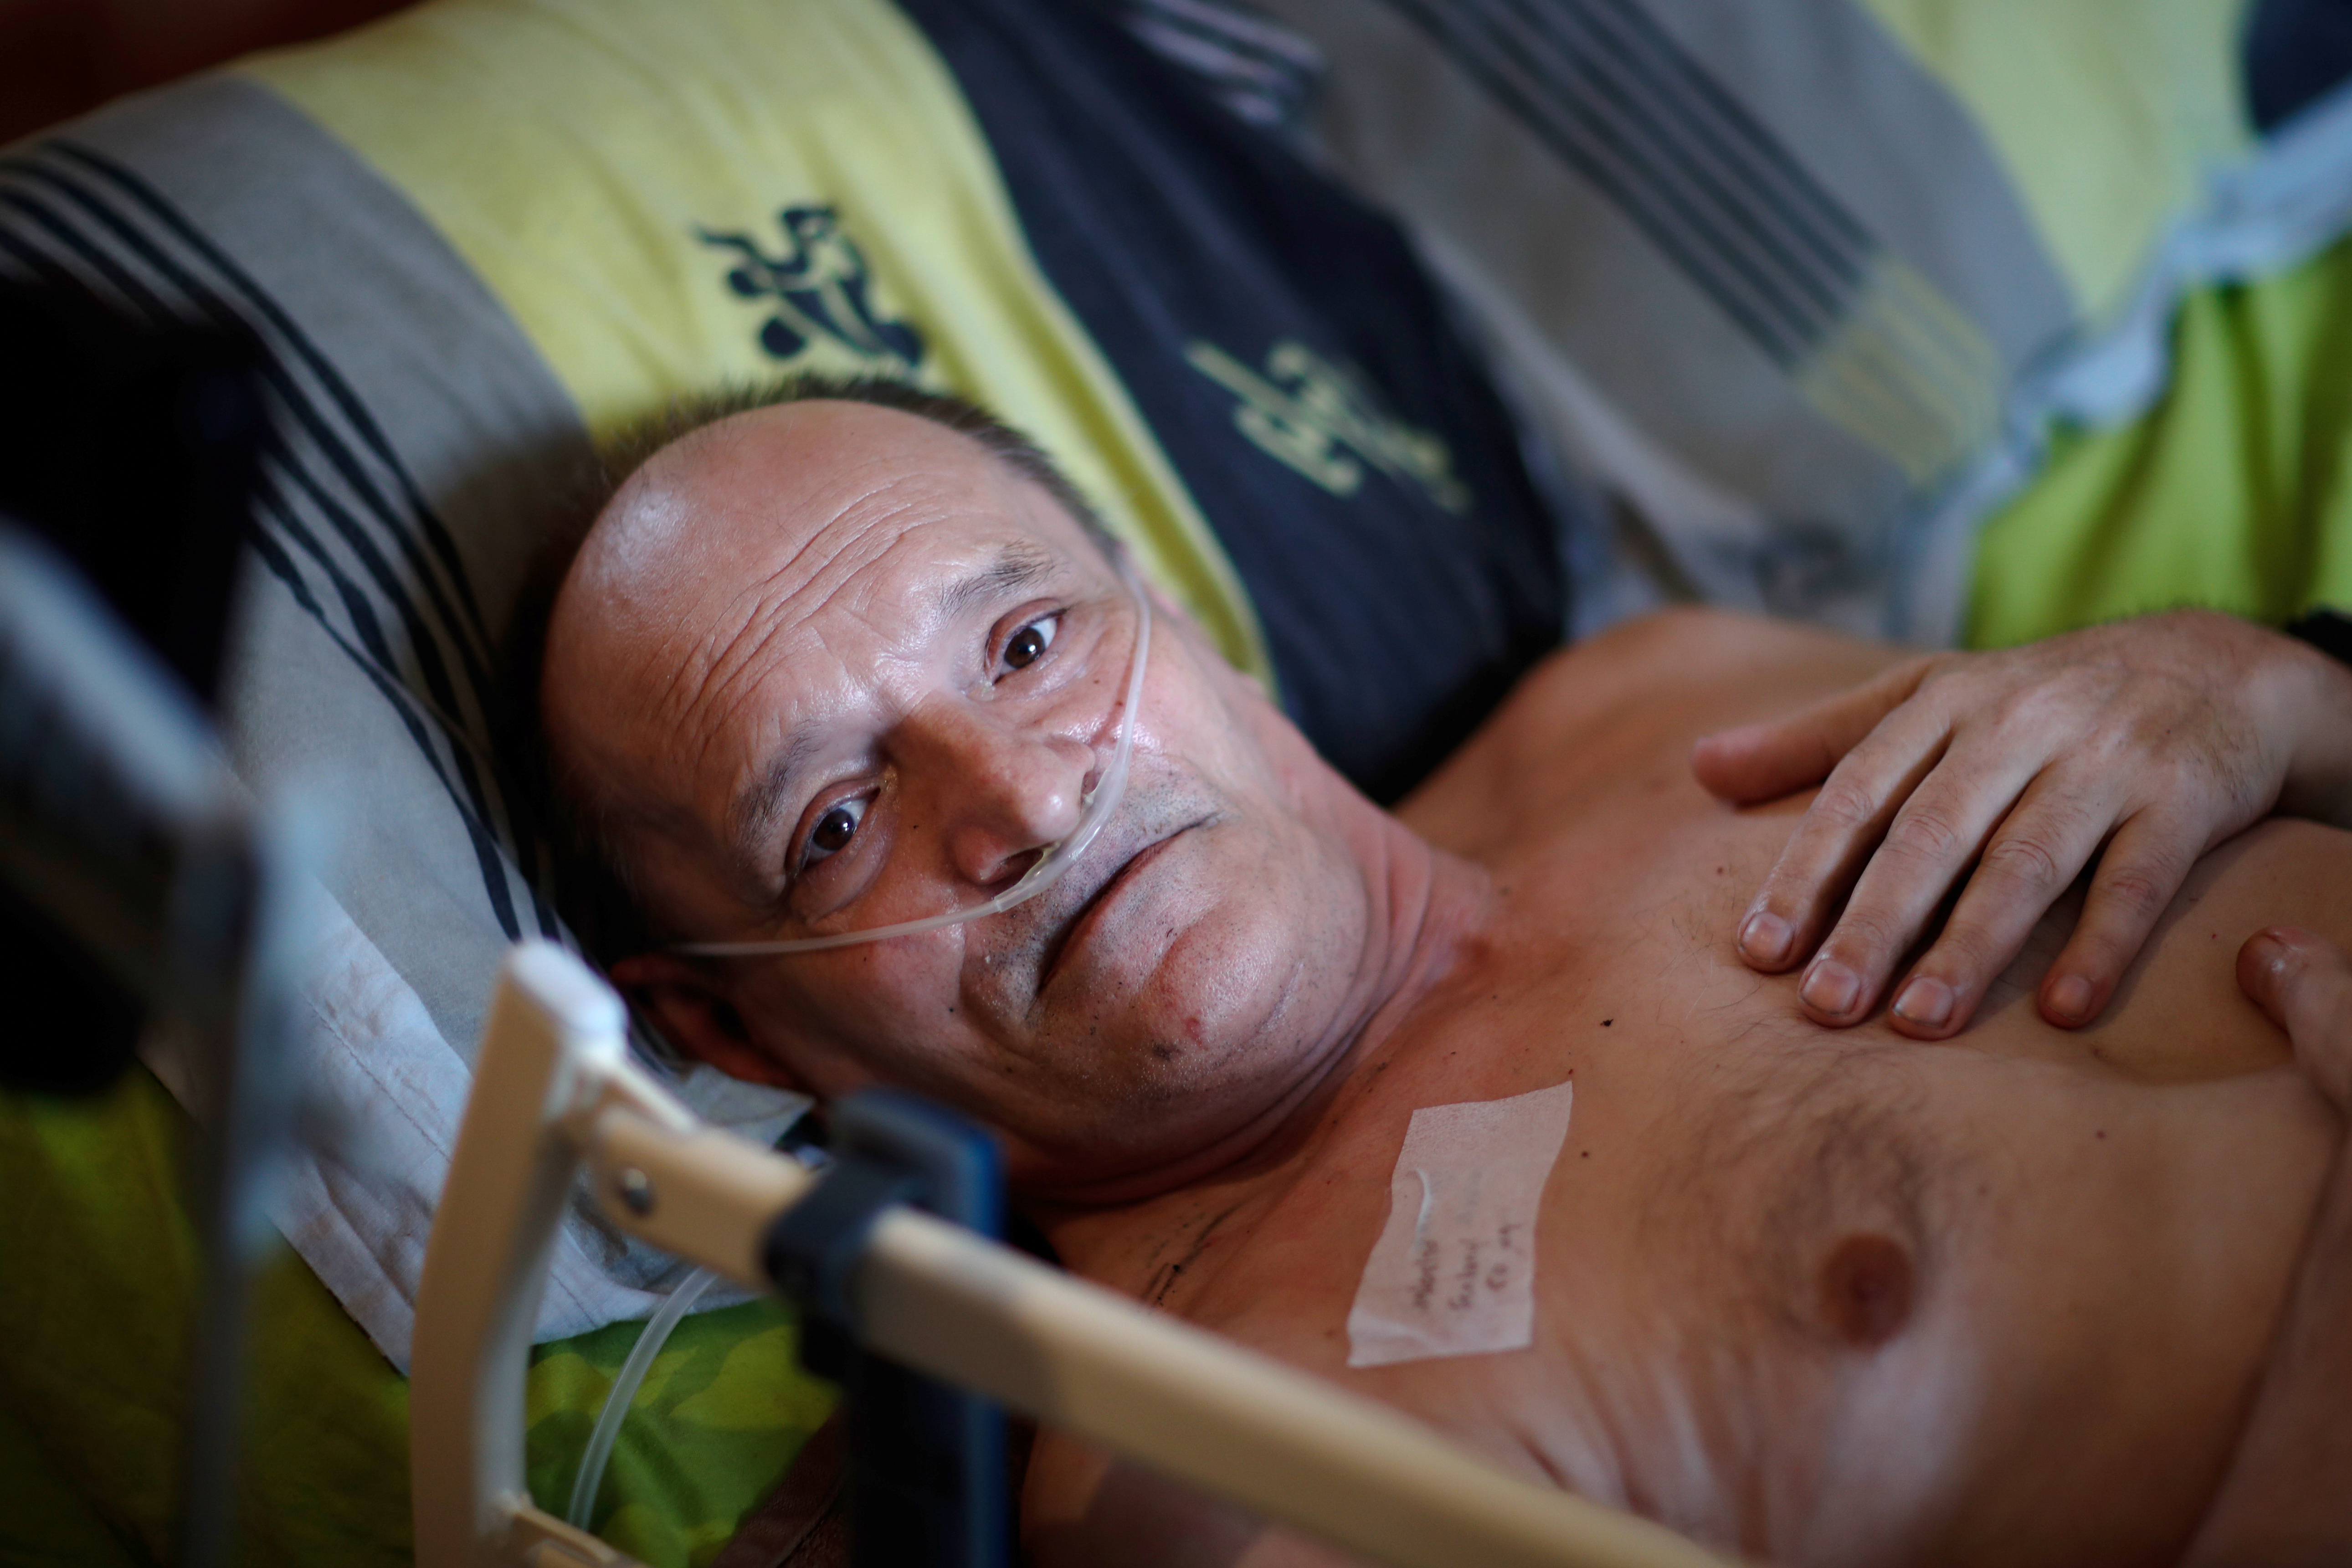 Alain Cocq, de 57 años, en su cama médica a la que ha estado confinado durante años como resultado de una enfermedad degenerativa que no tiene tratamiento (REUTERS/Gonzalo Fuentes)